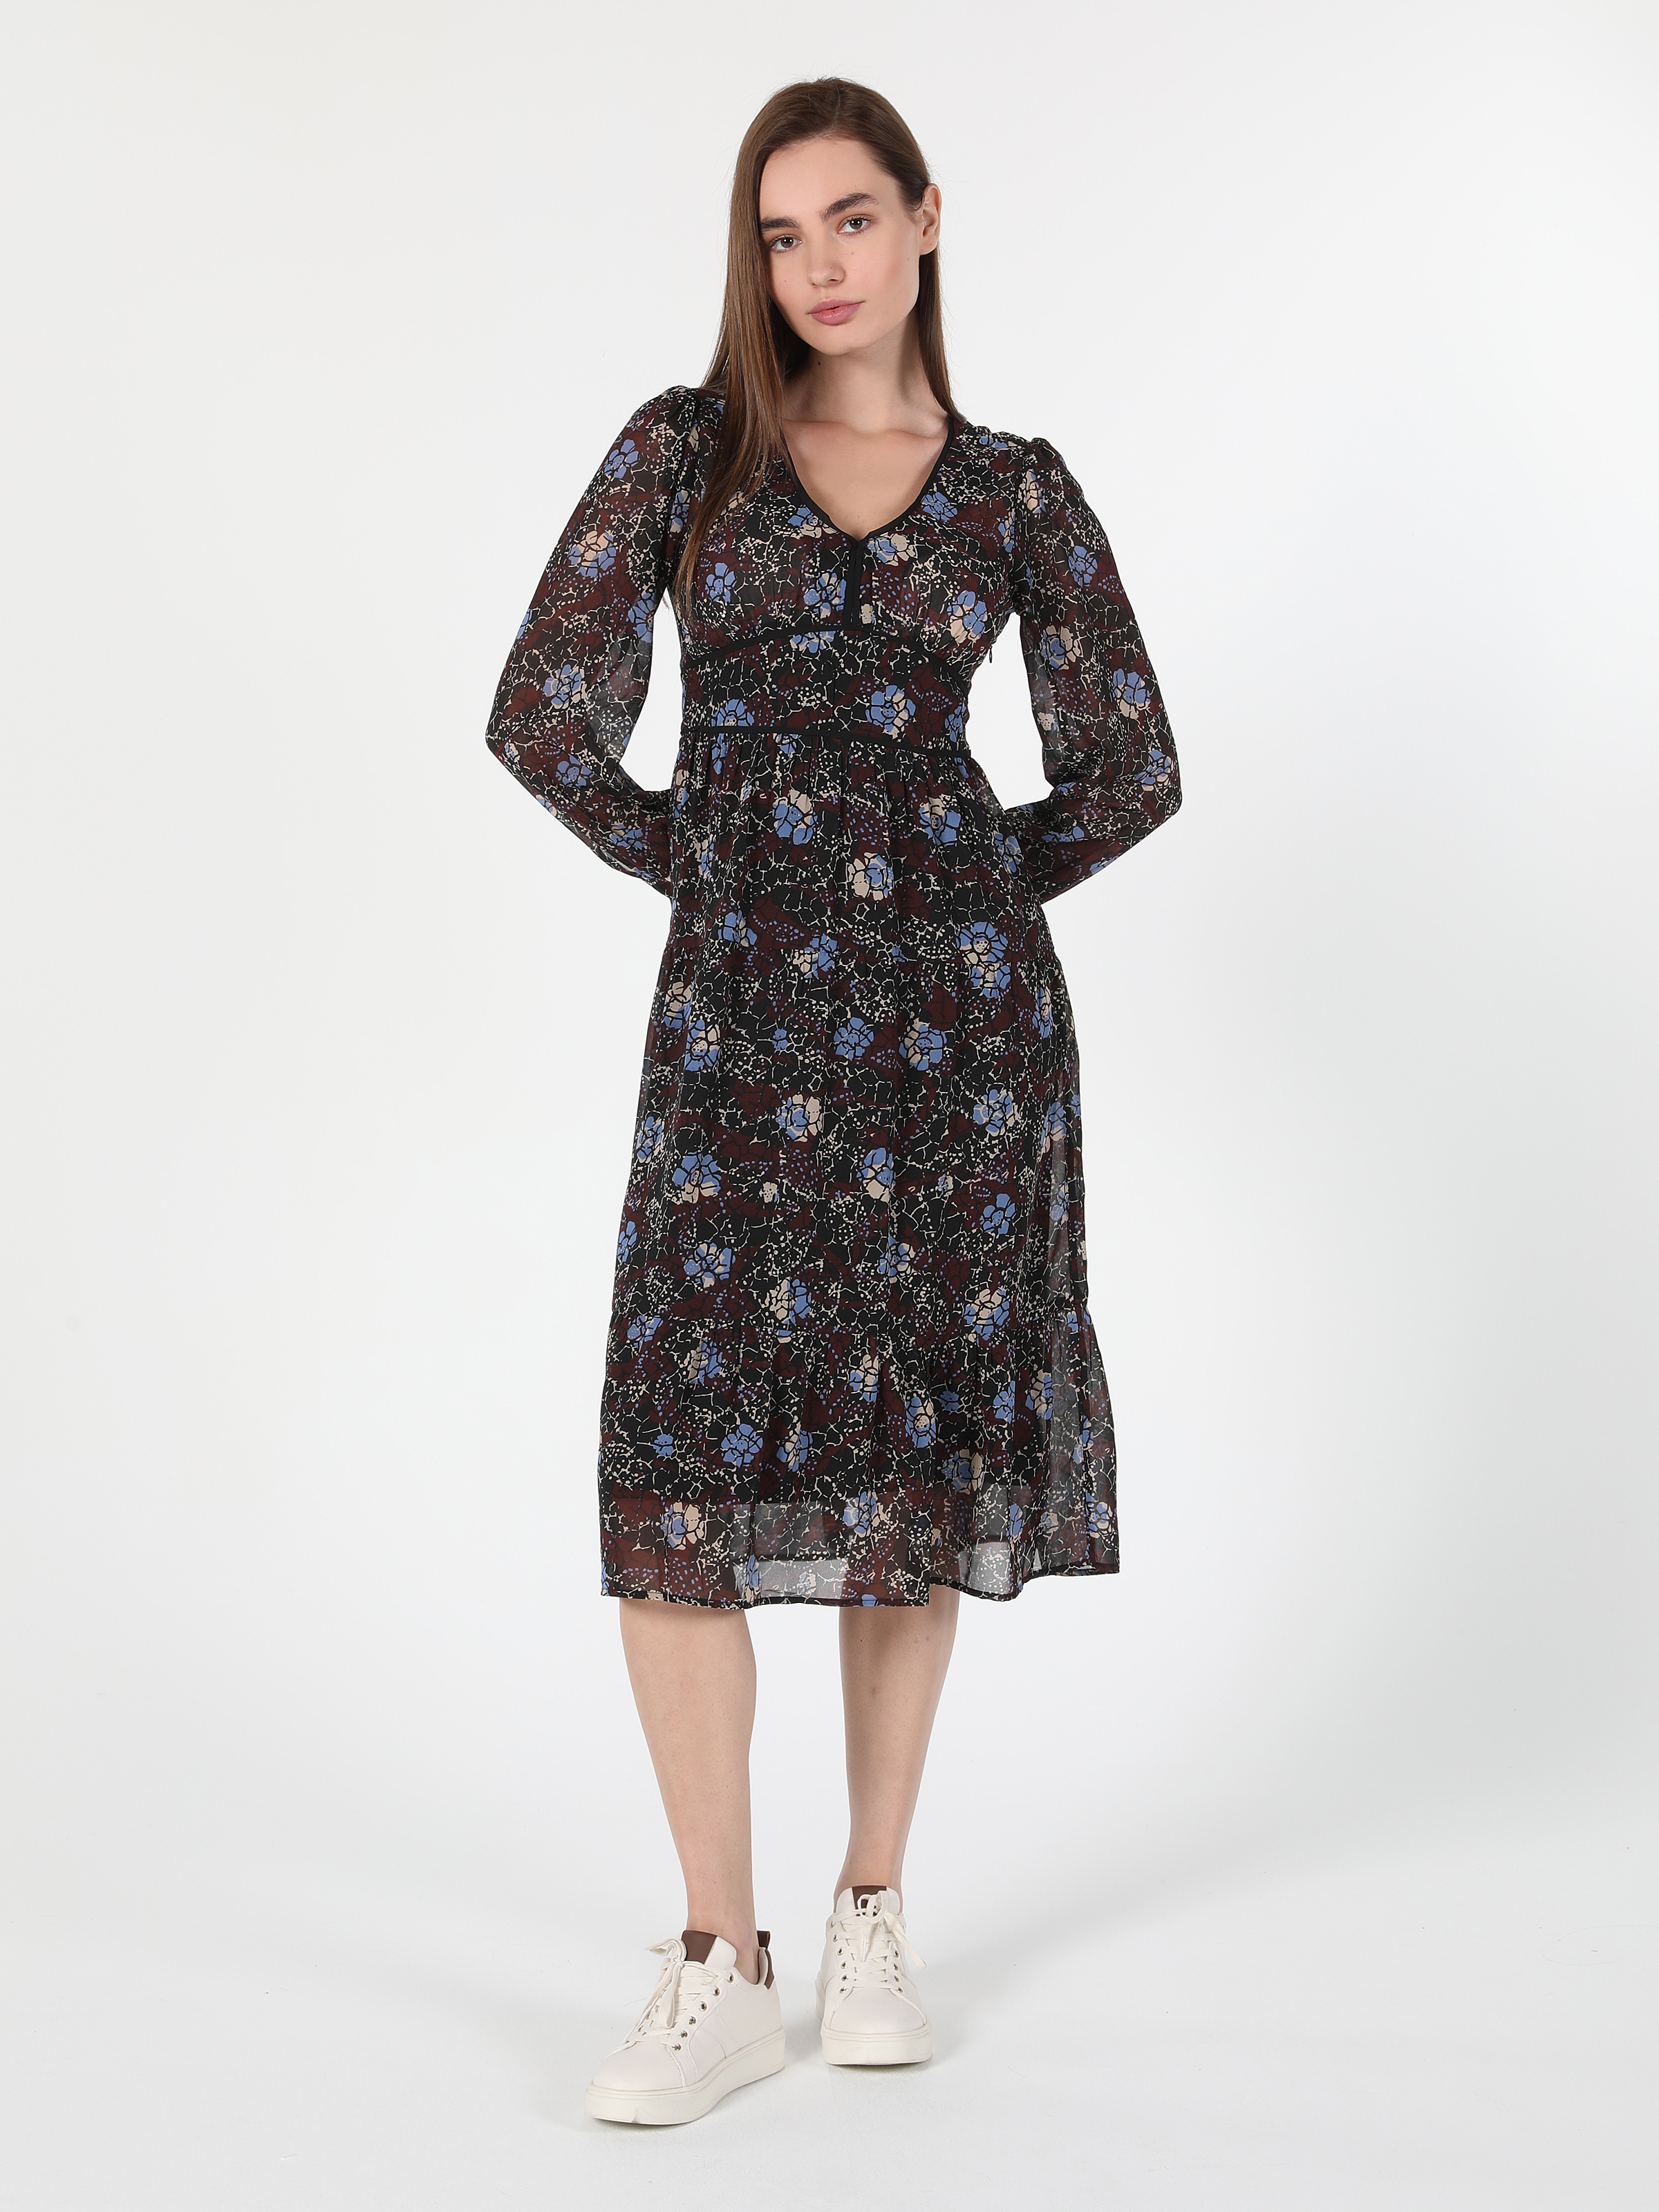 Показати інформацію про Сукня Жіноча Різнокольорова Довга З Малюнком Cl1060160